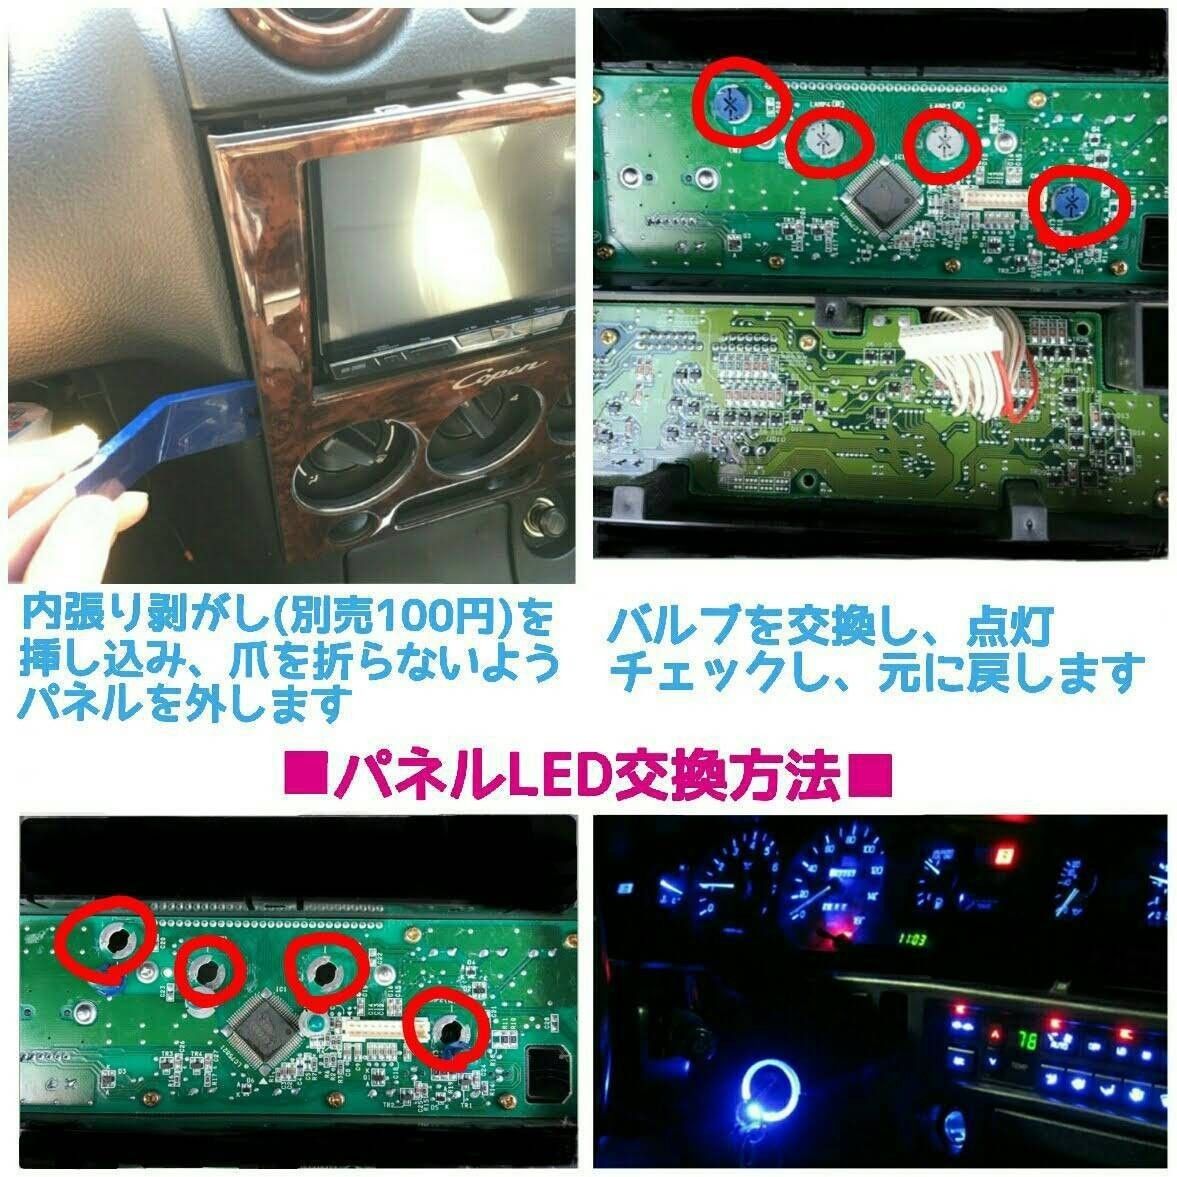 トヨタ MR2 SW20 LEDメーター&エマニュアルアコンパネルセット